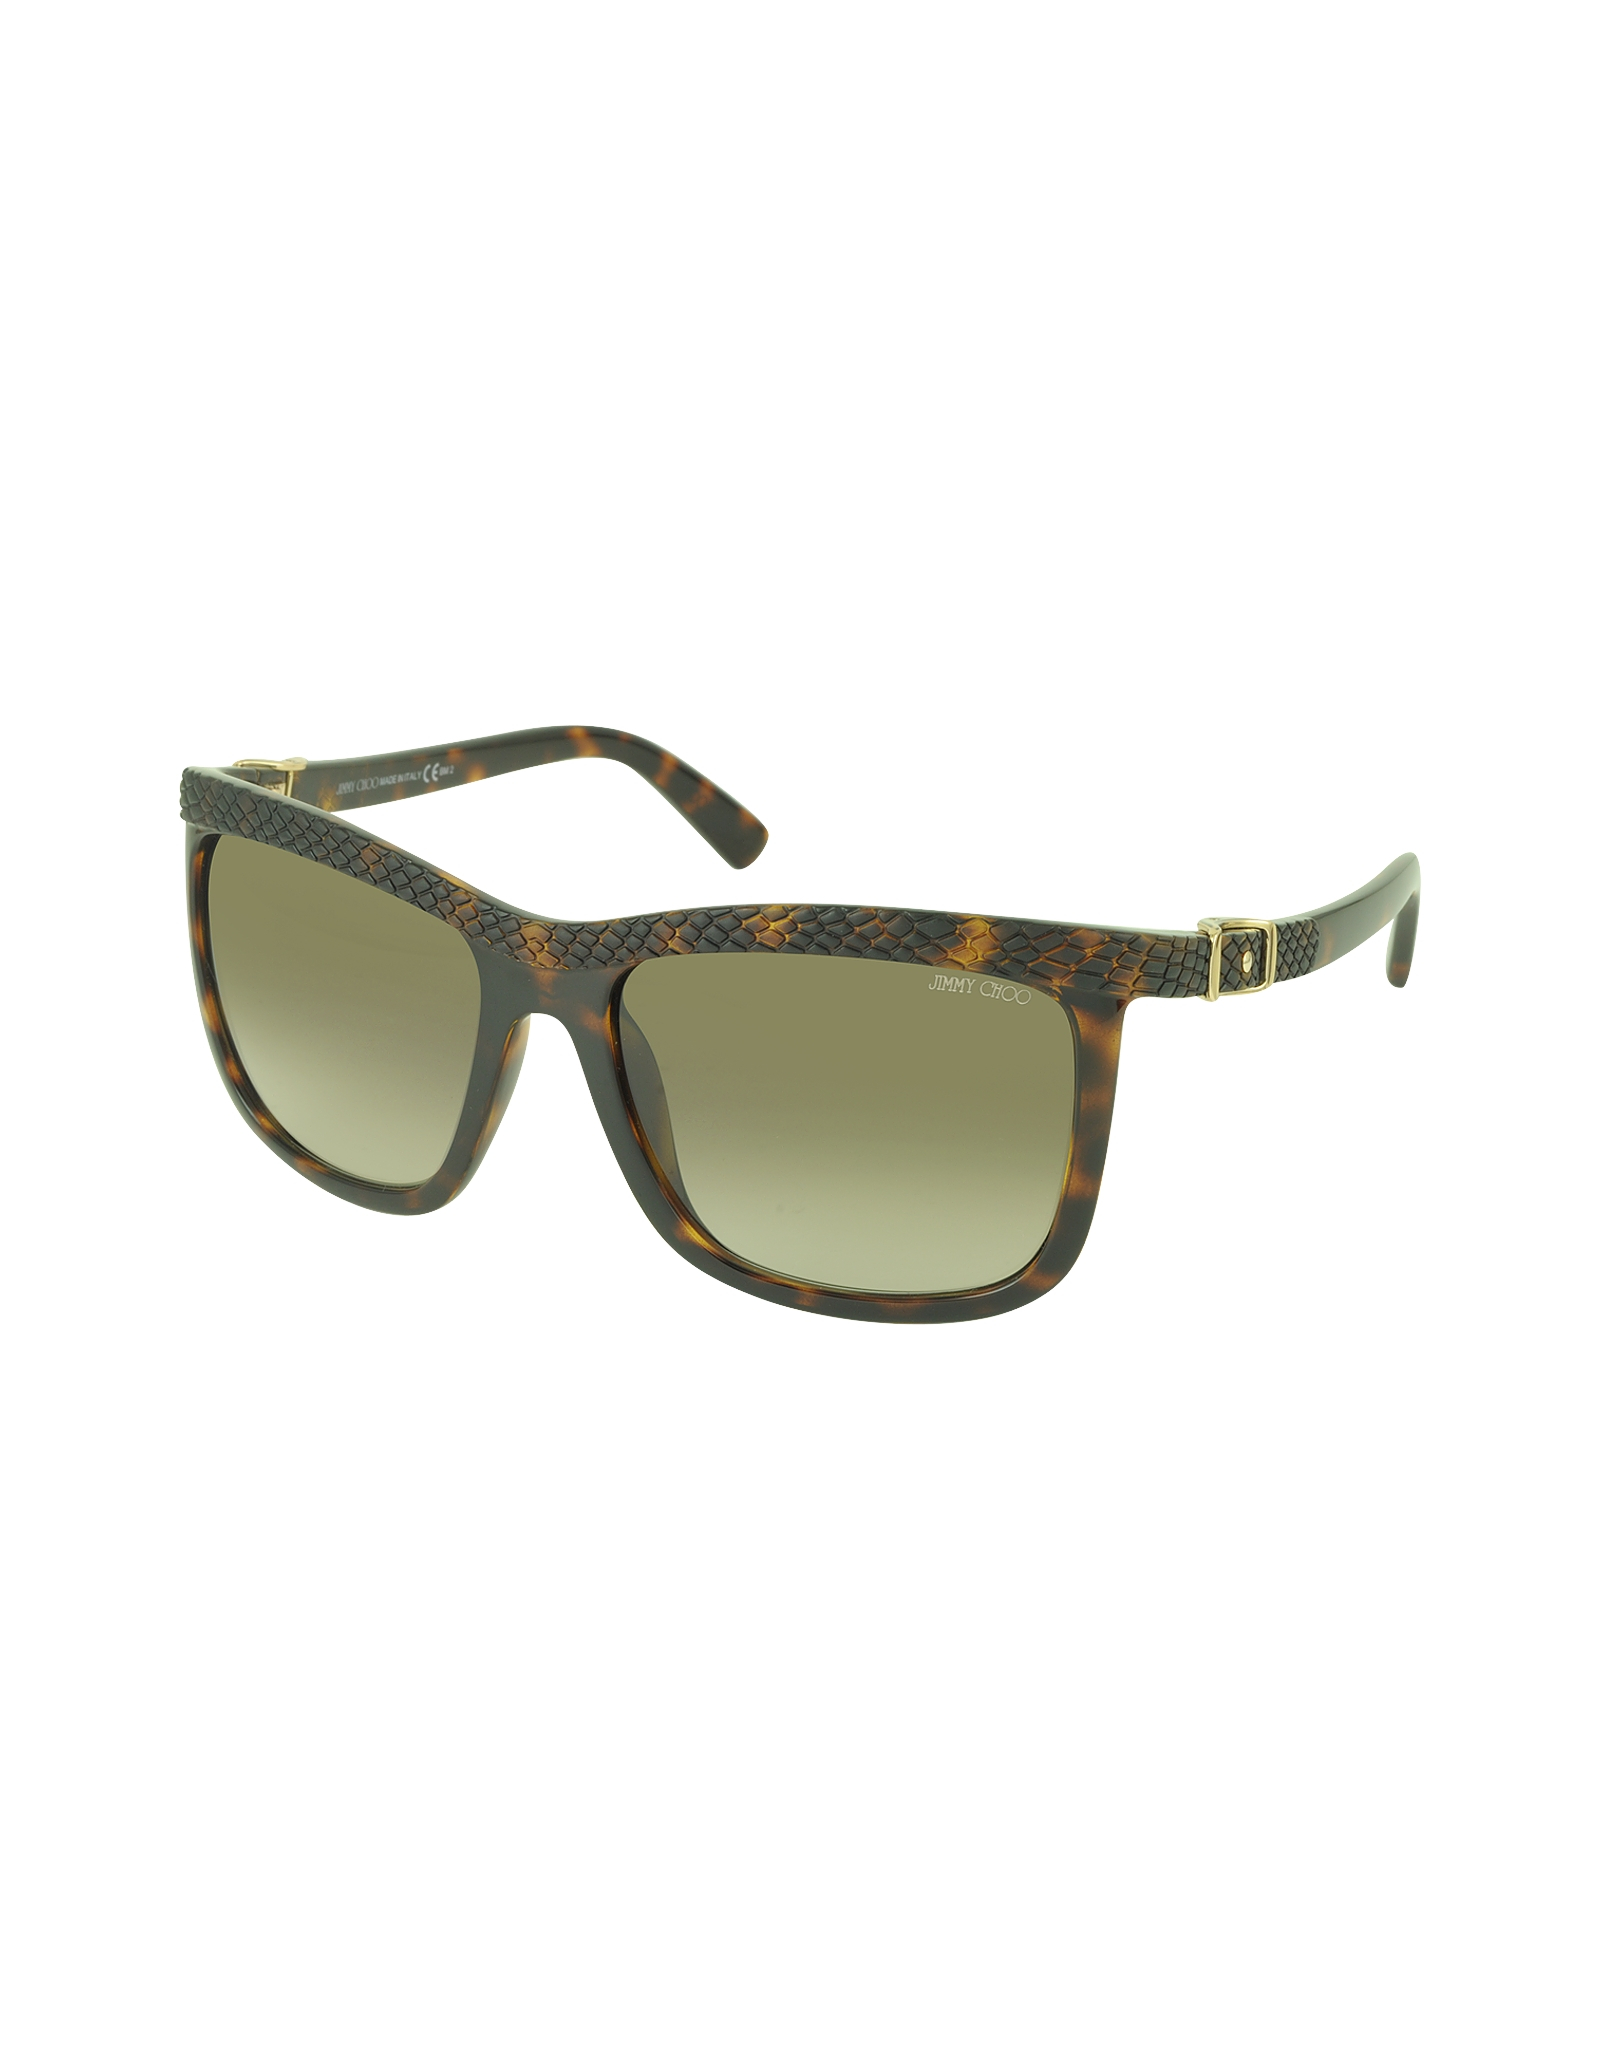 Jimmy choo Rea/s 791ha Havana Lizard Acetate Women's Sunglasses in ...